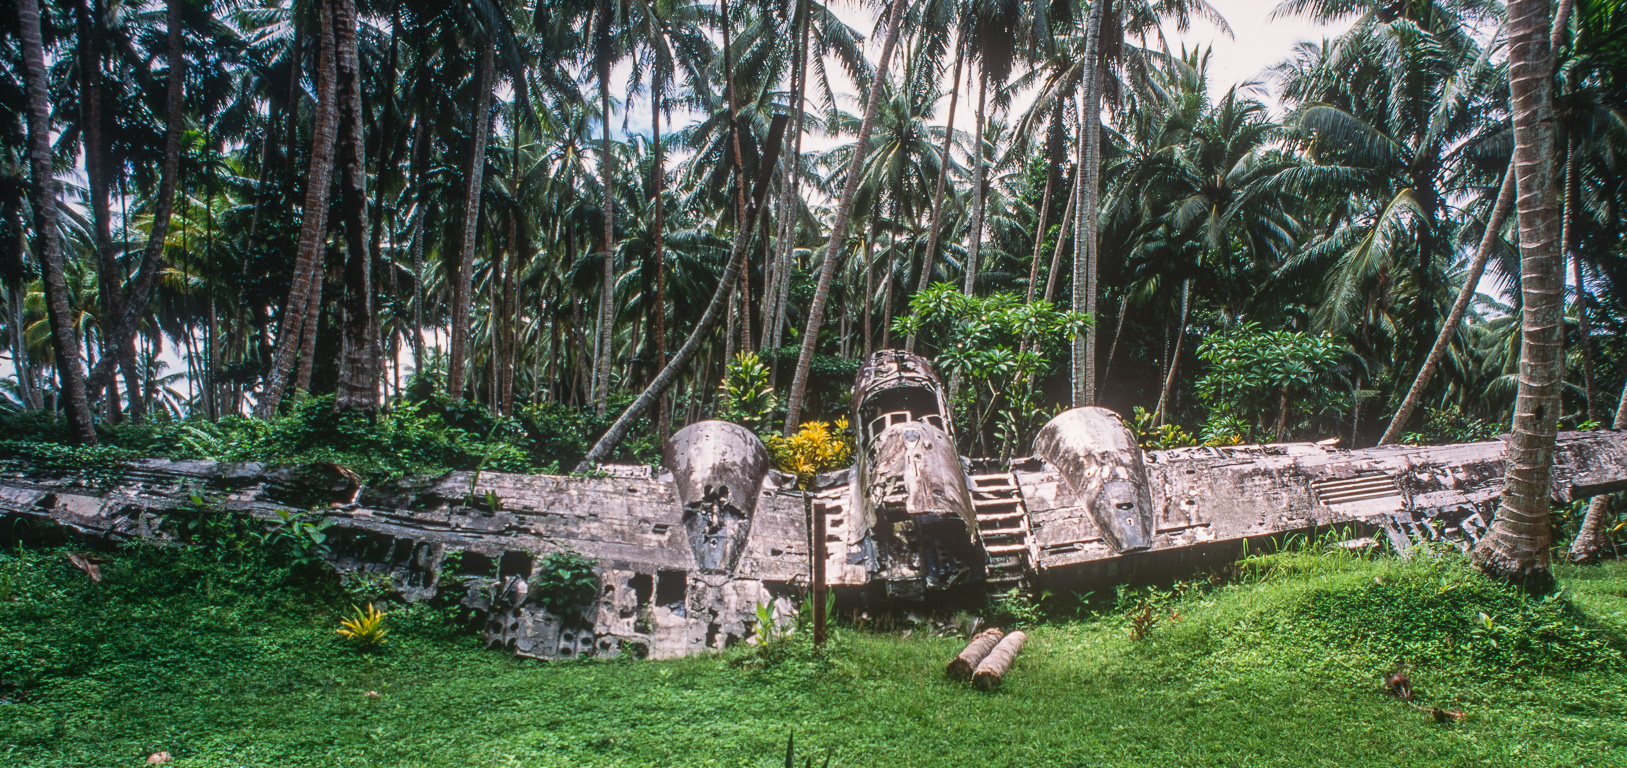 Un bombardier en aluminium émerge d'une clairière entourée de cocotiers.